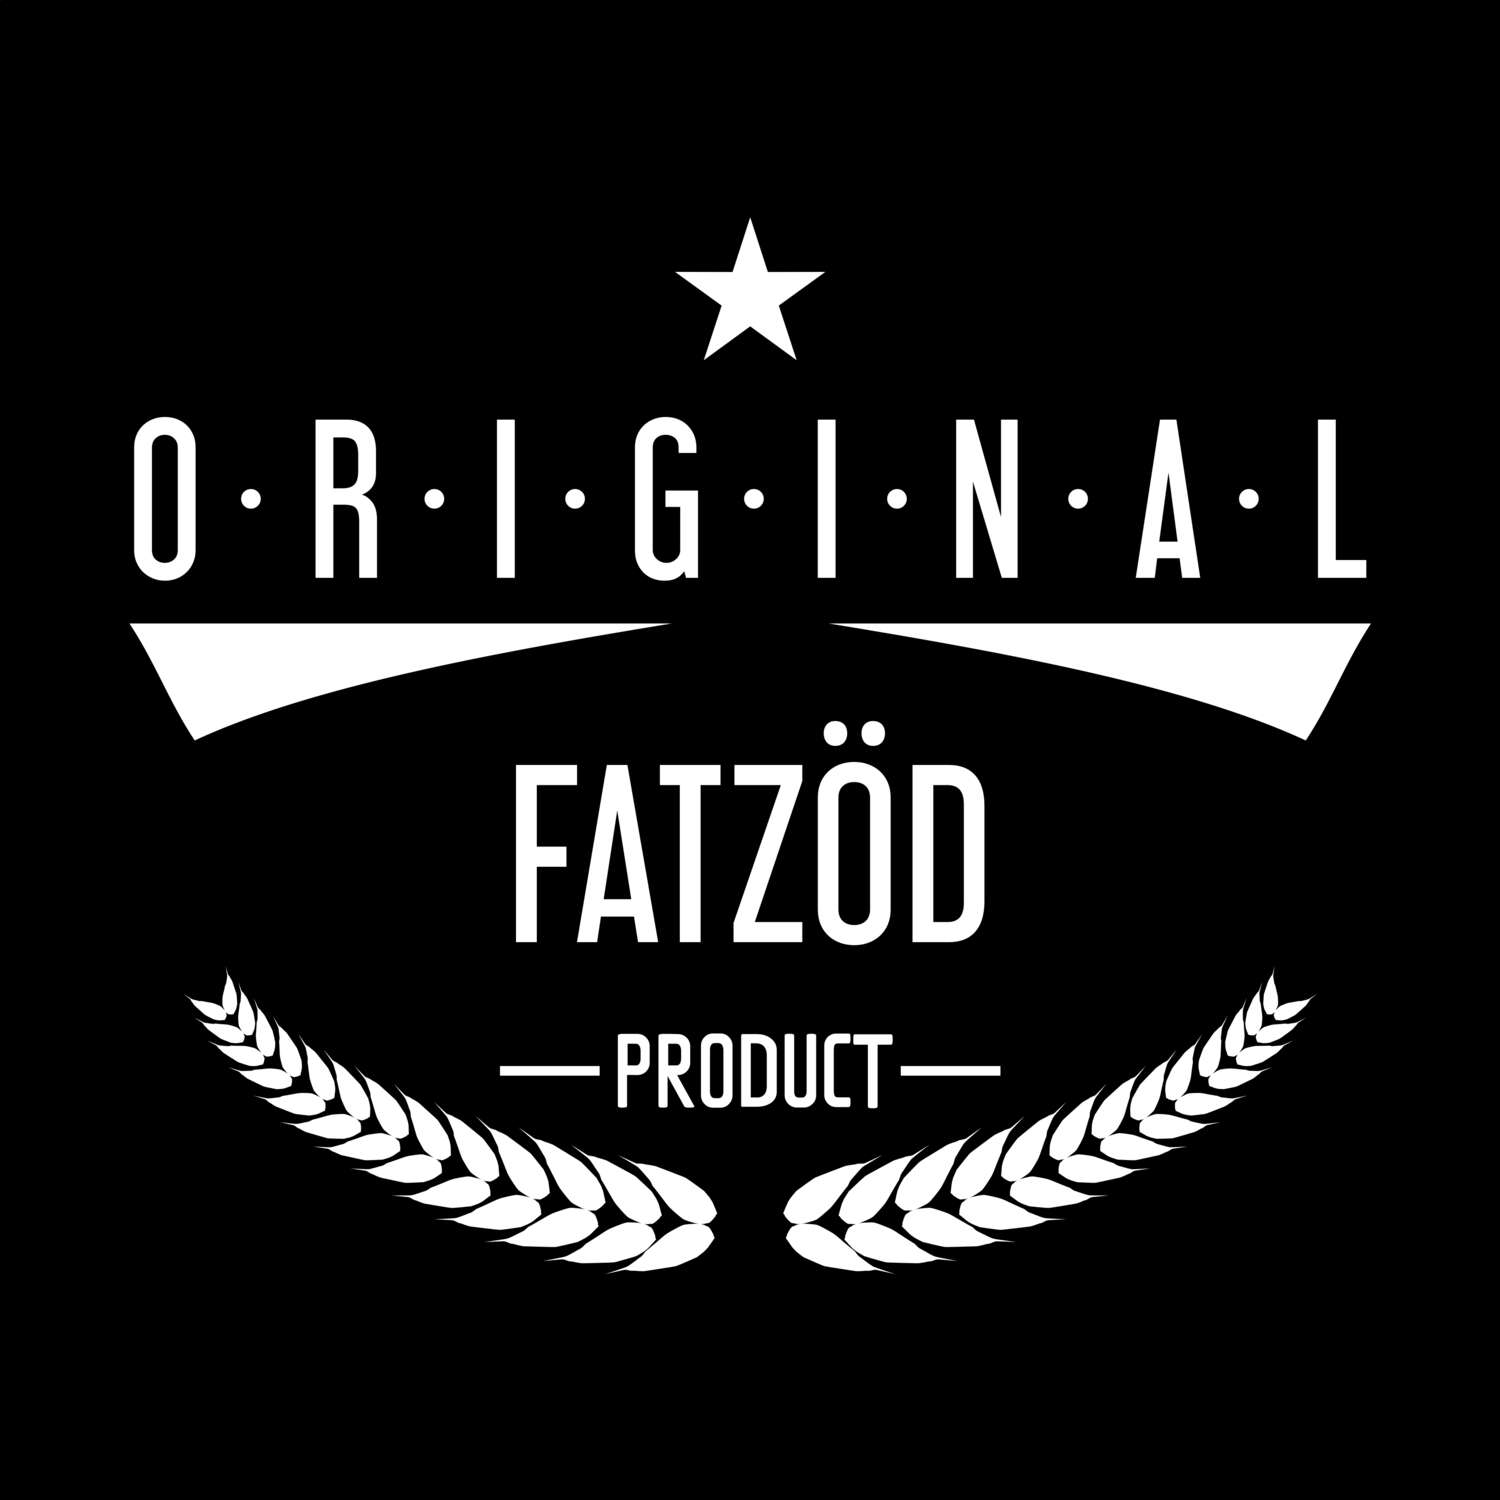 Fatzöd T-Shirt »Original Product«